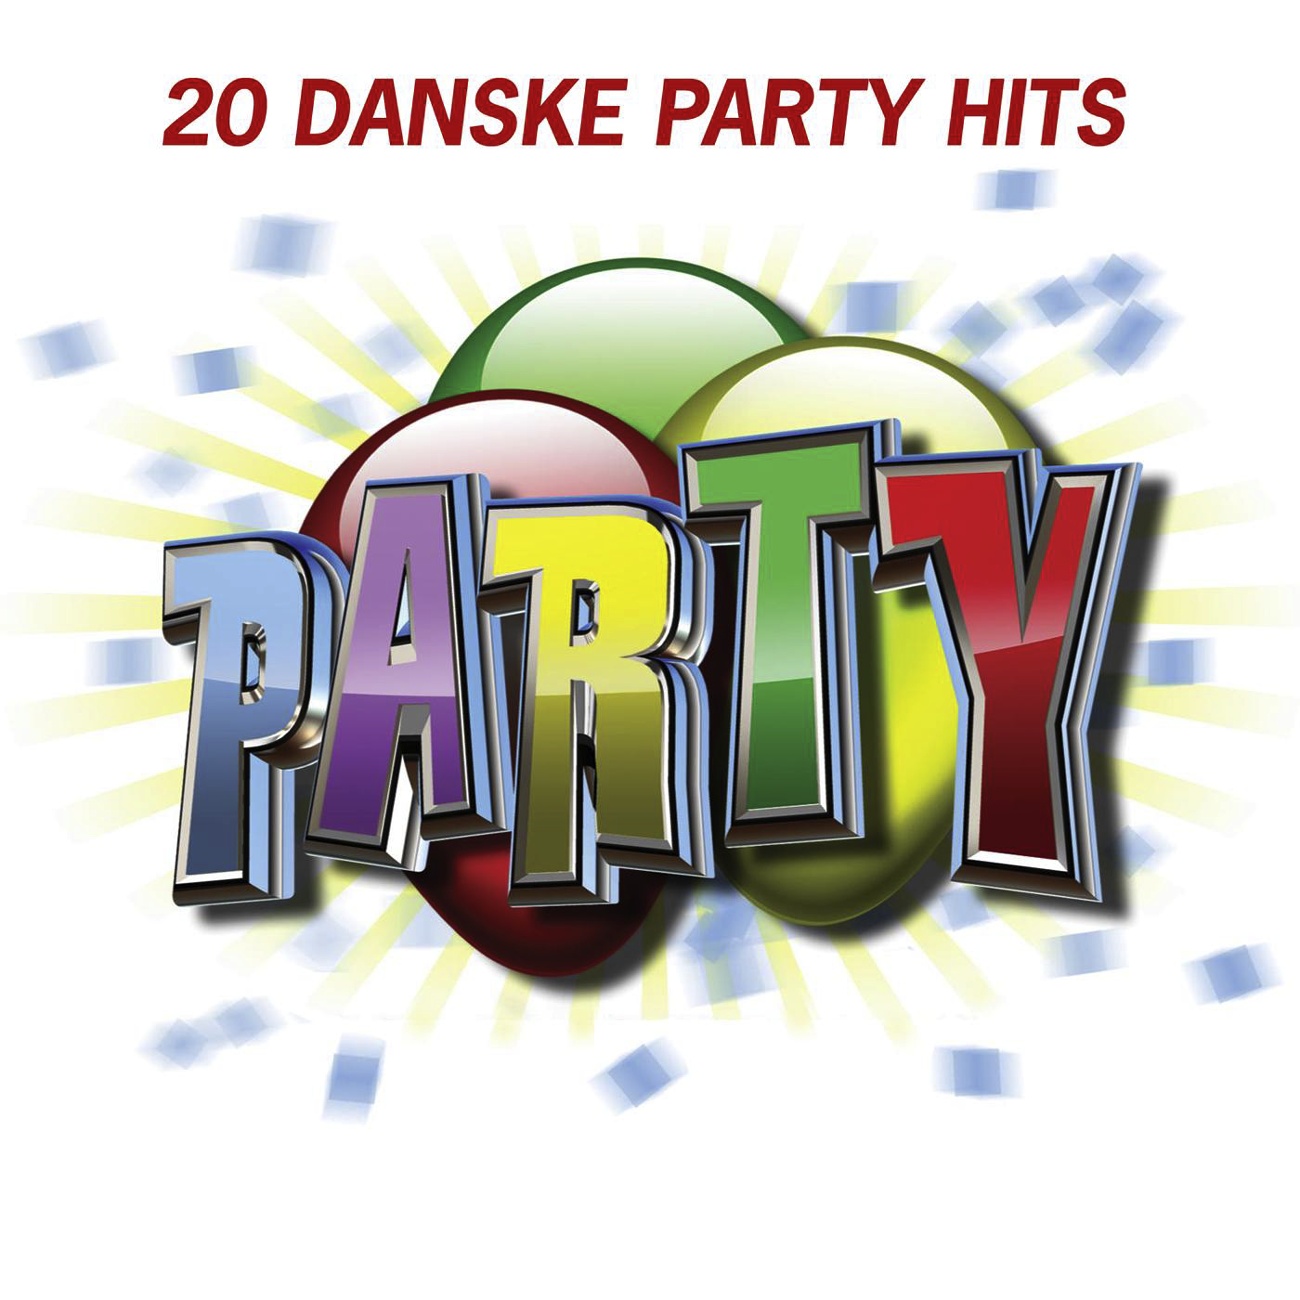 20 Danske Party Hits